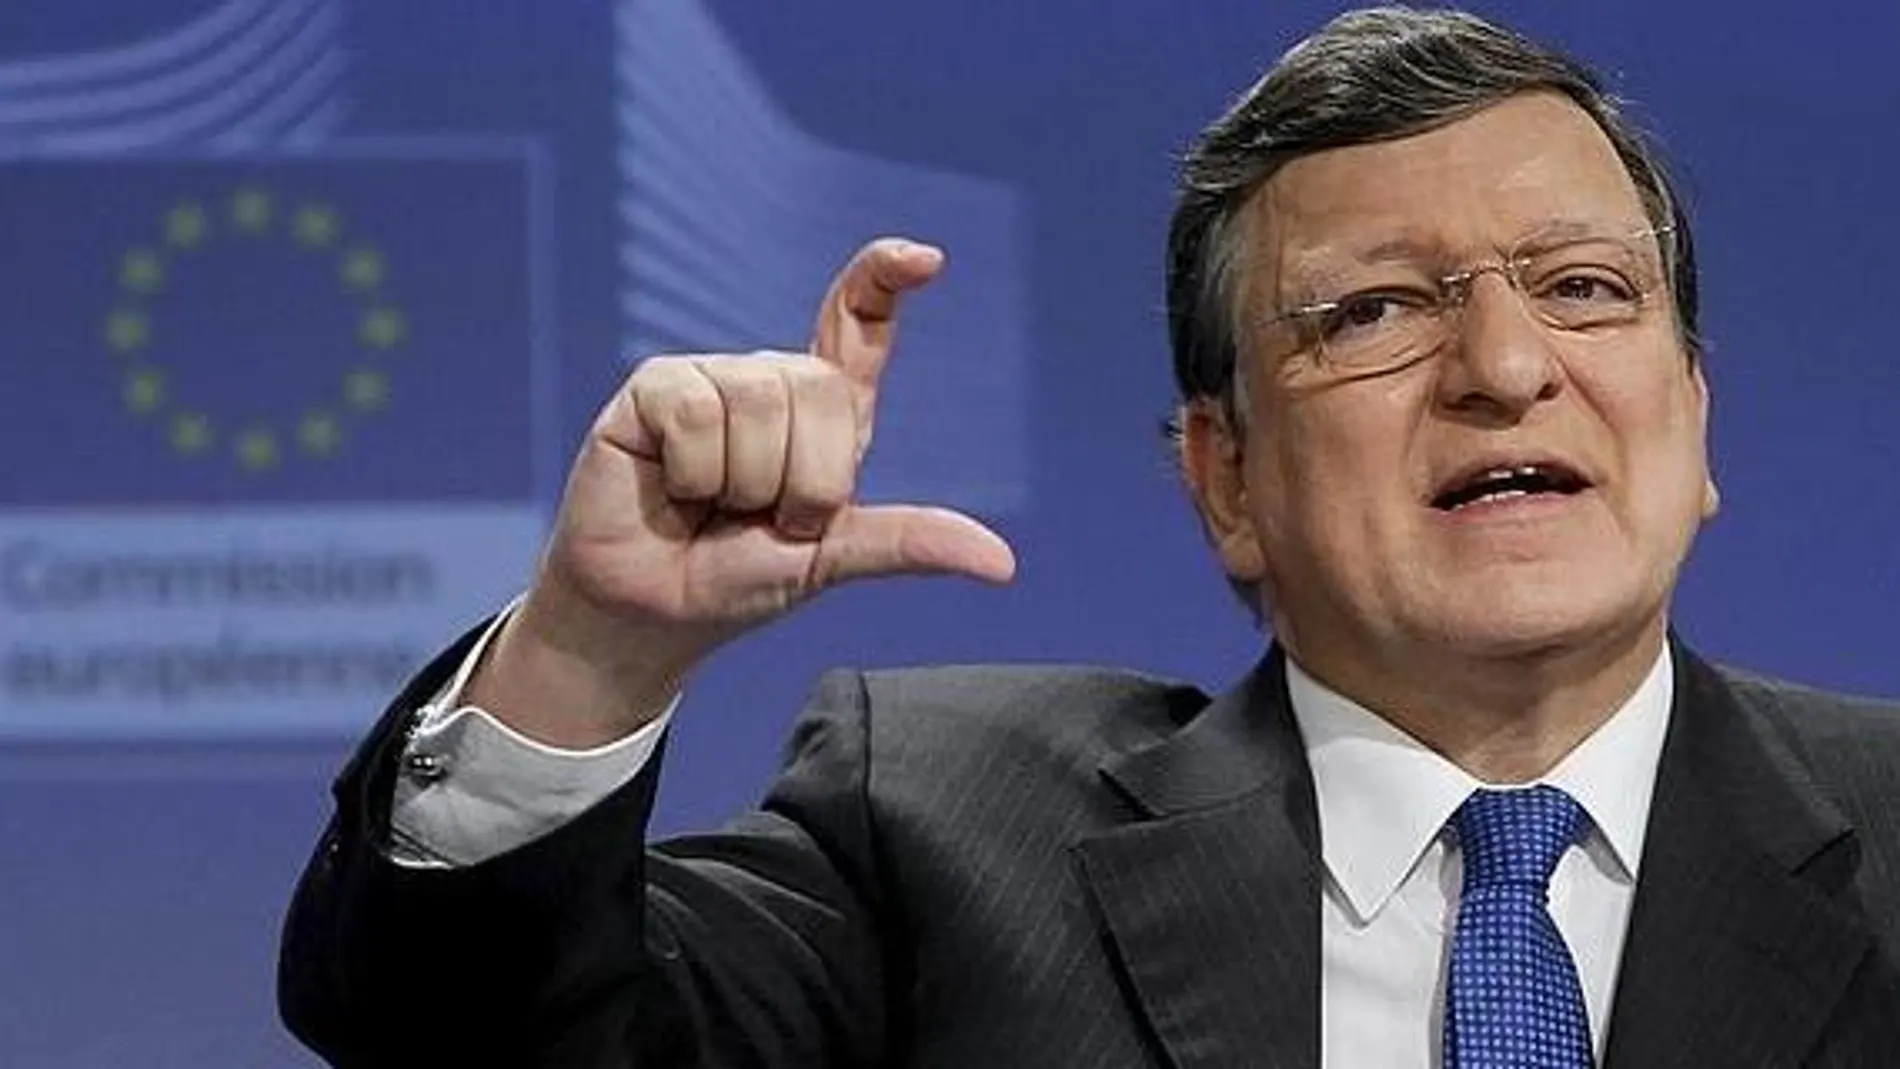 El presidente de la Comisión Europea, José Manuel Durao Barroso.